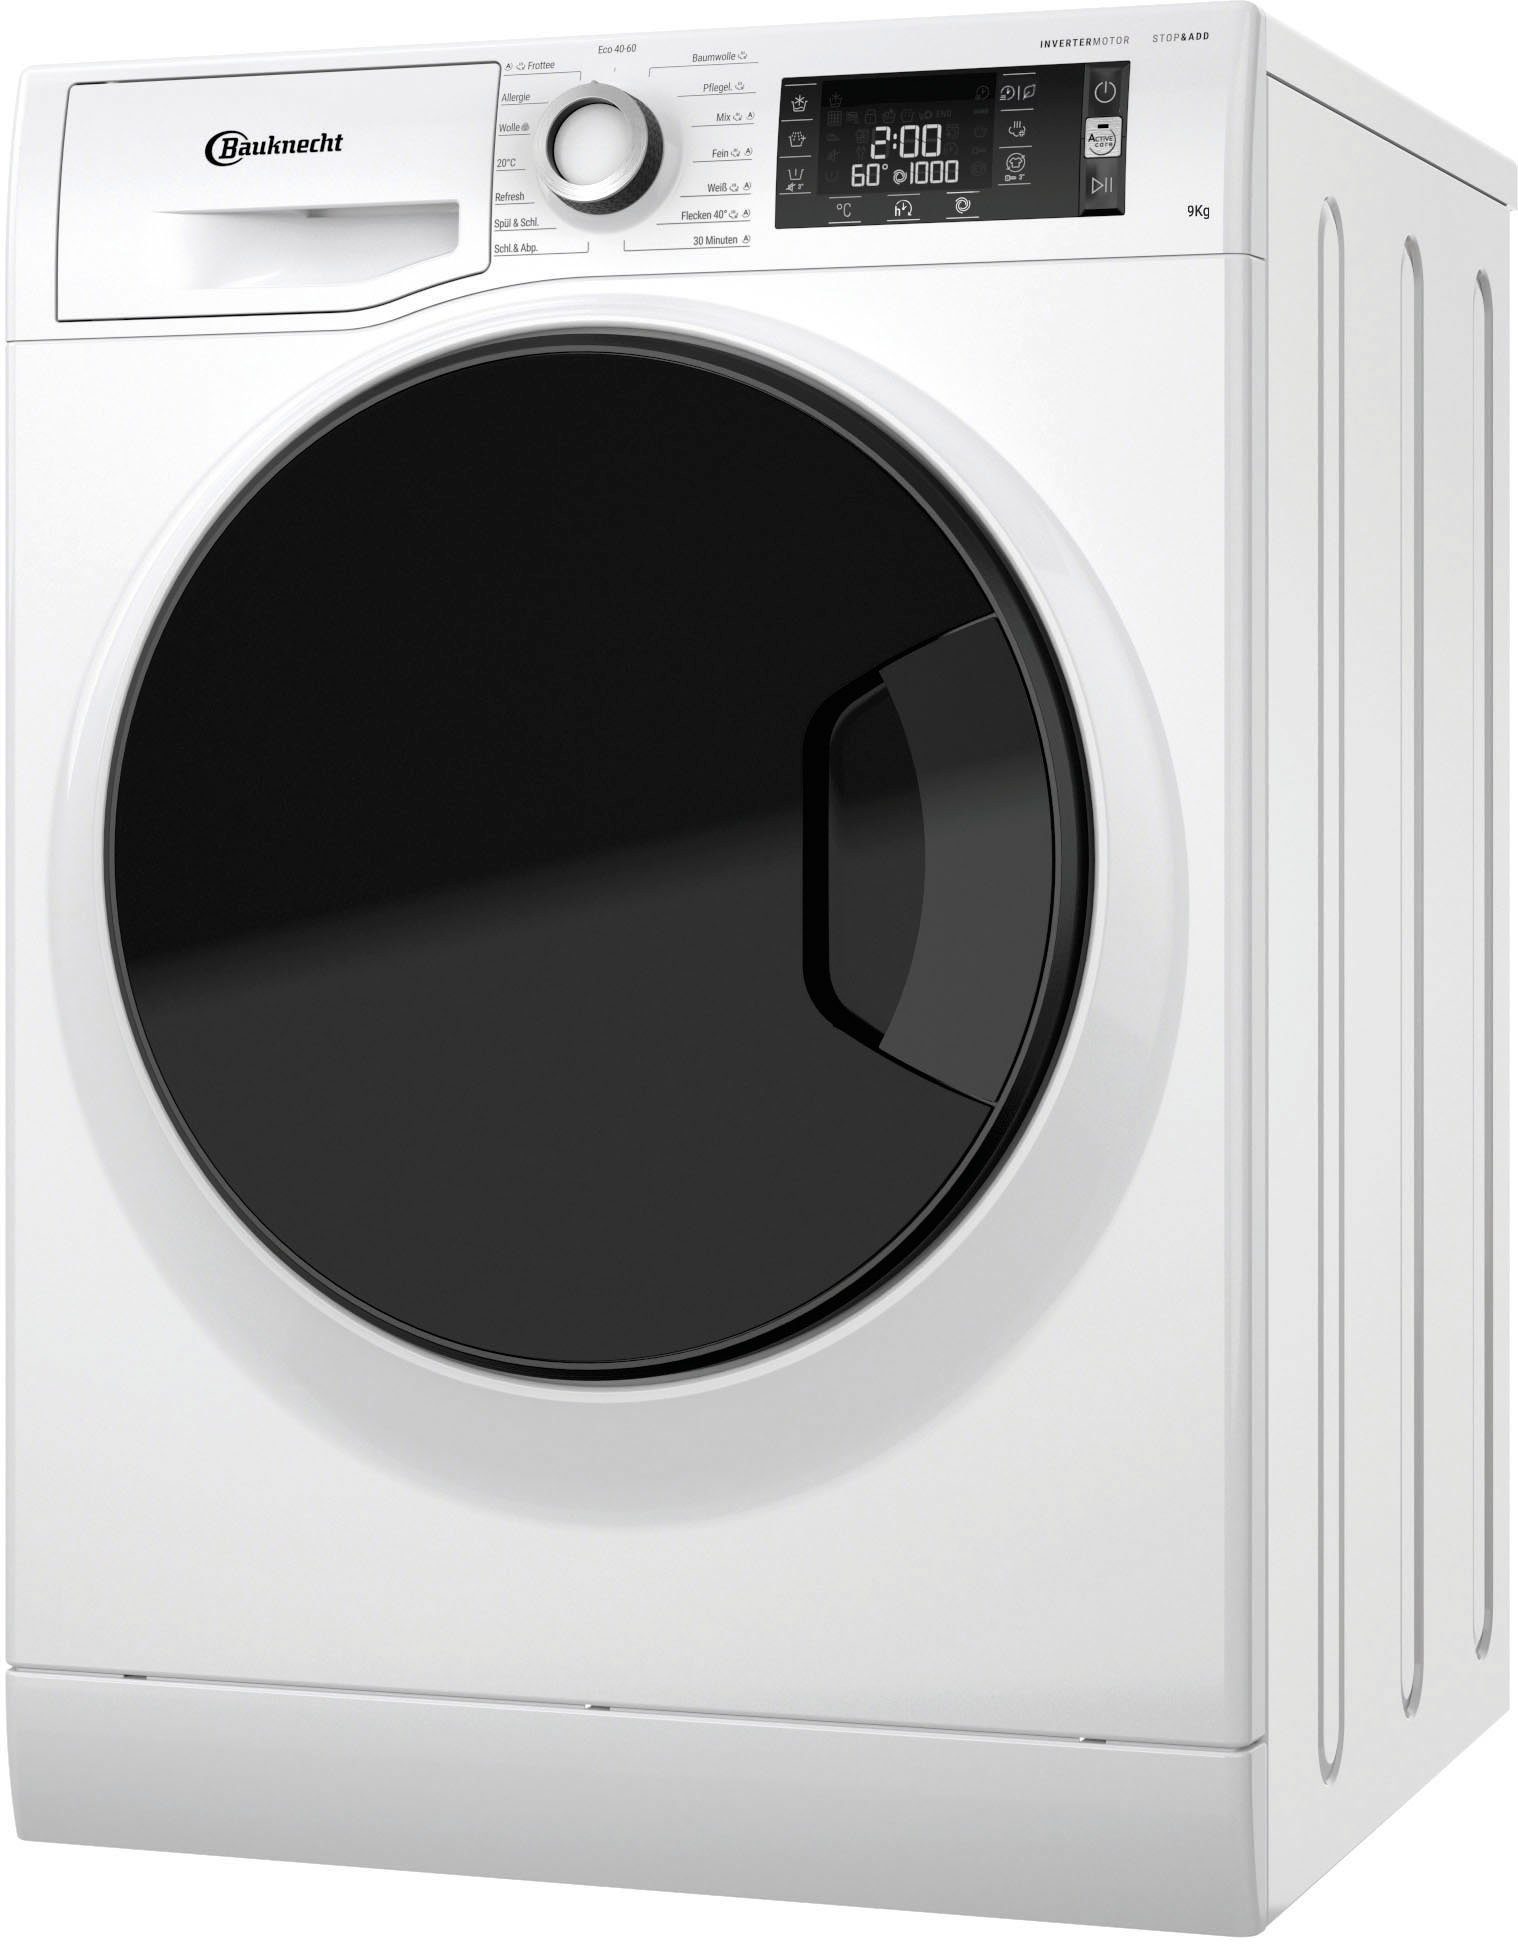 BAUKNECHT Waschmaschine WM Sense 9A, 9 kg, 1400 U/min | Frontlader